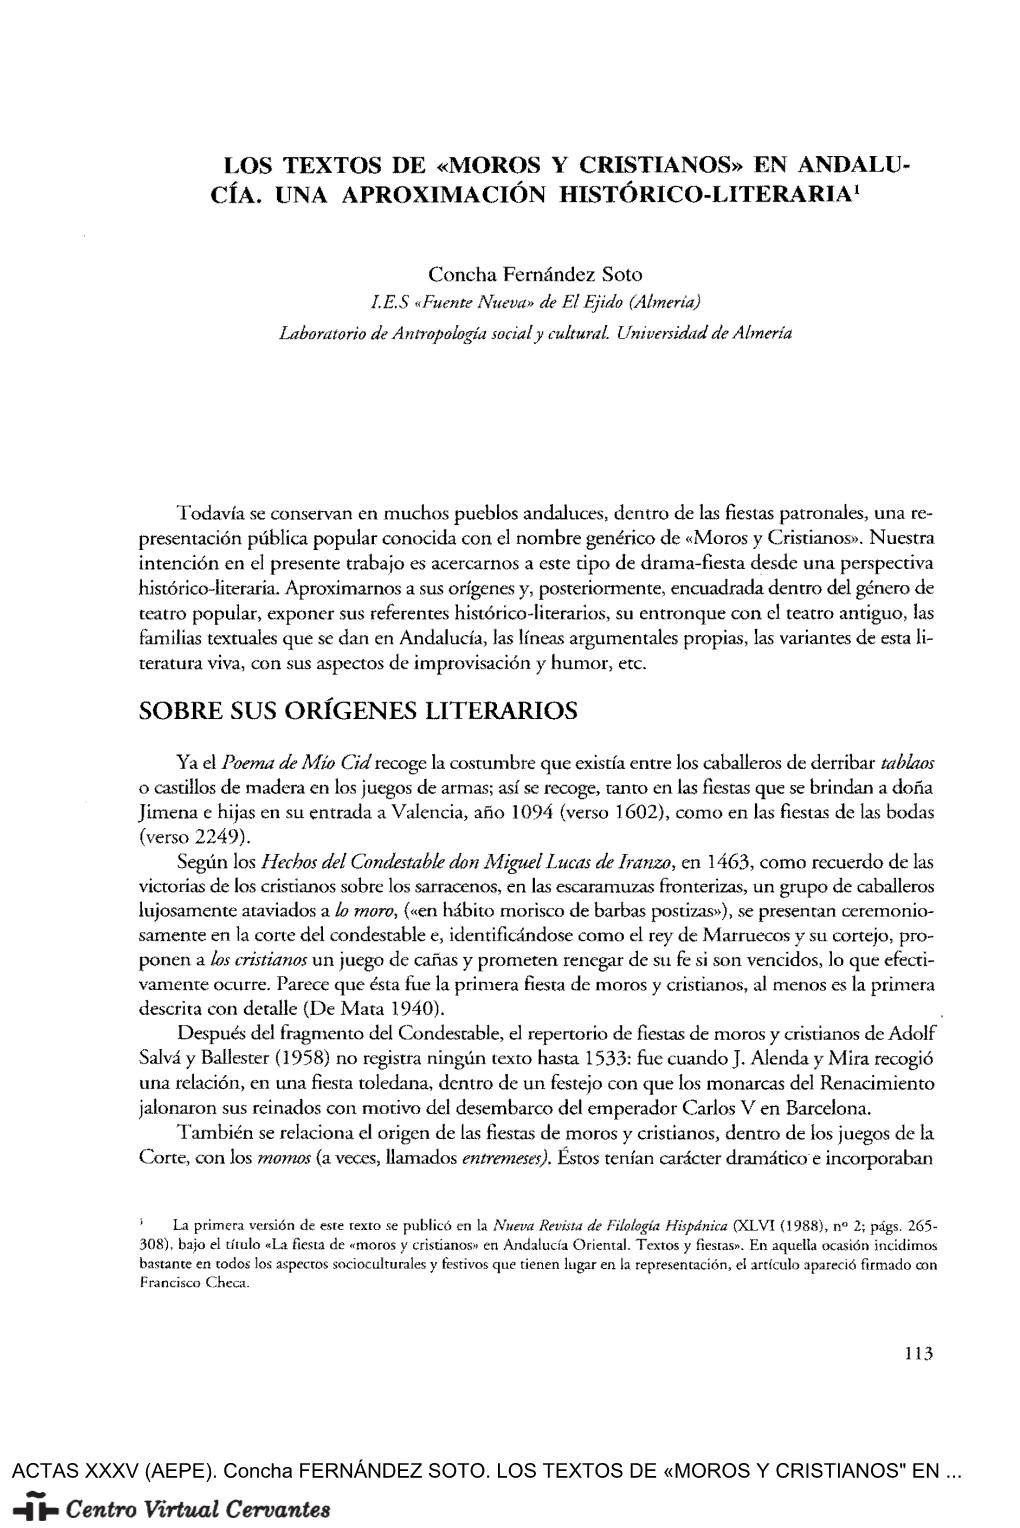 Los Textos De «Moros Y Cristianos" En Andalucía. Una Aproximación Histórico-Literaria